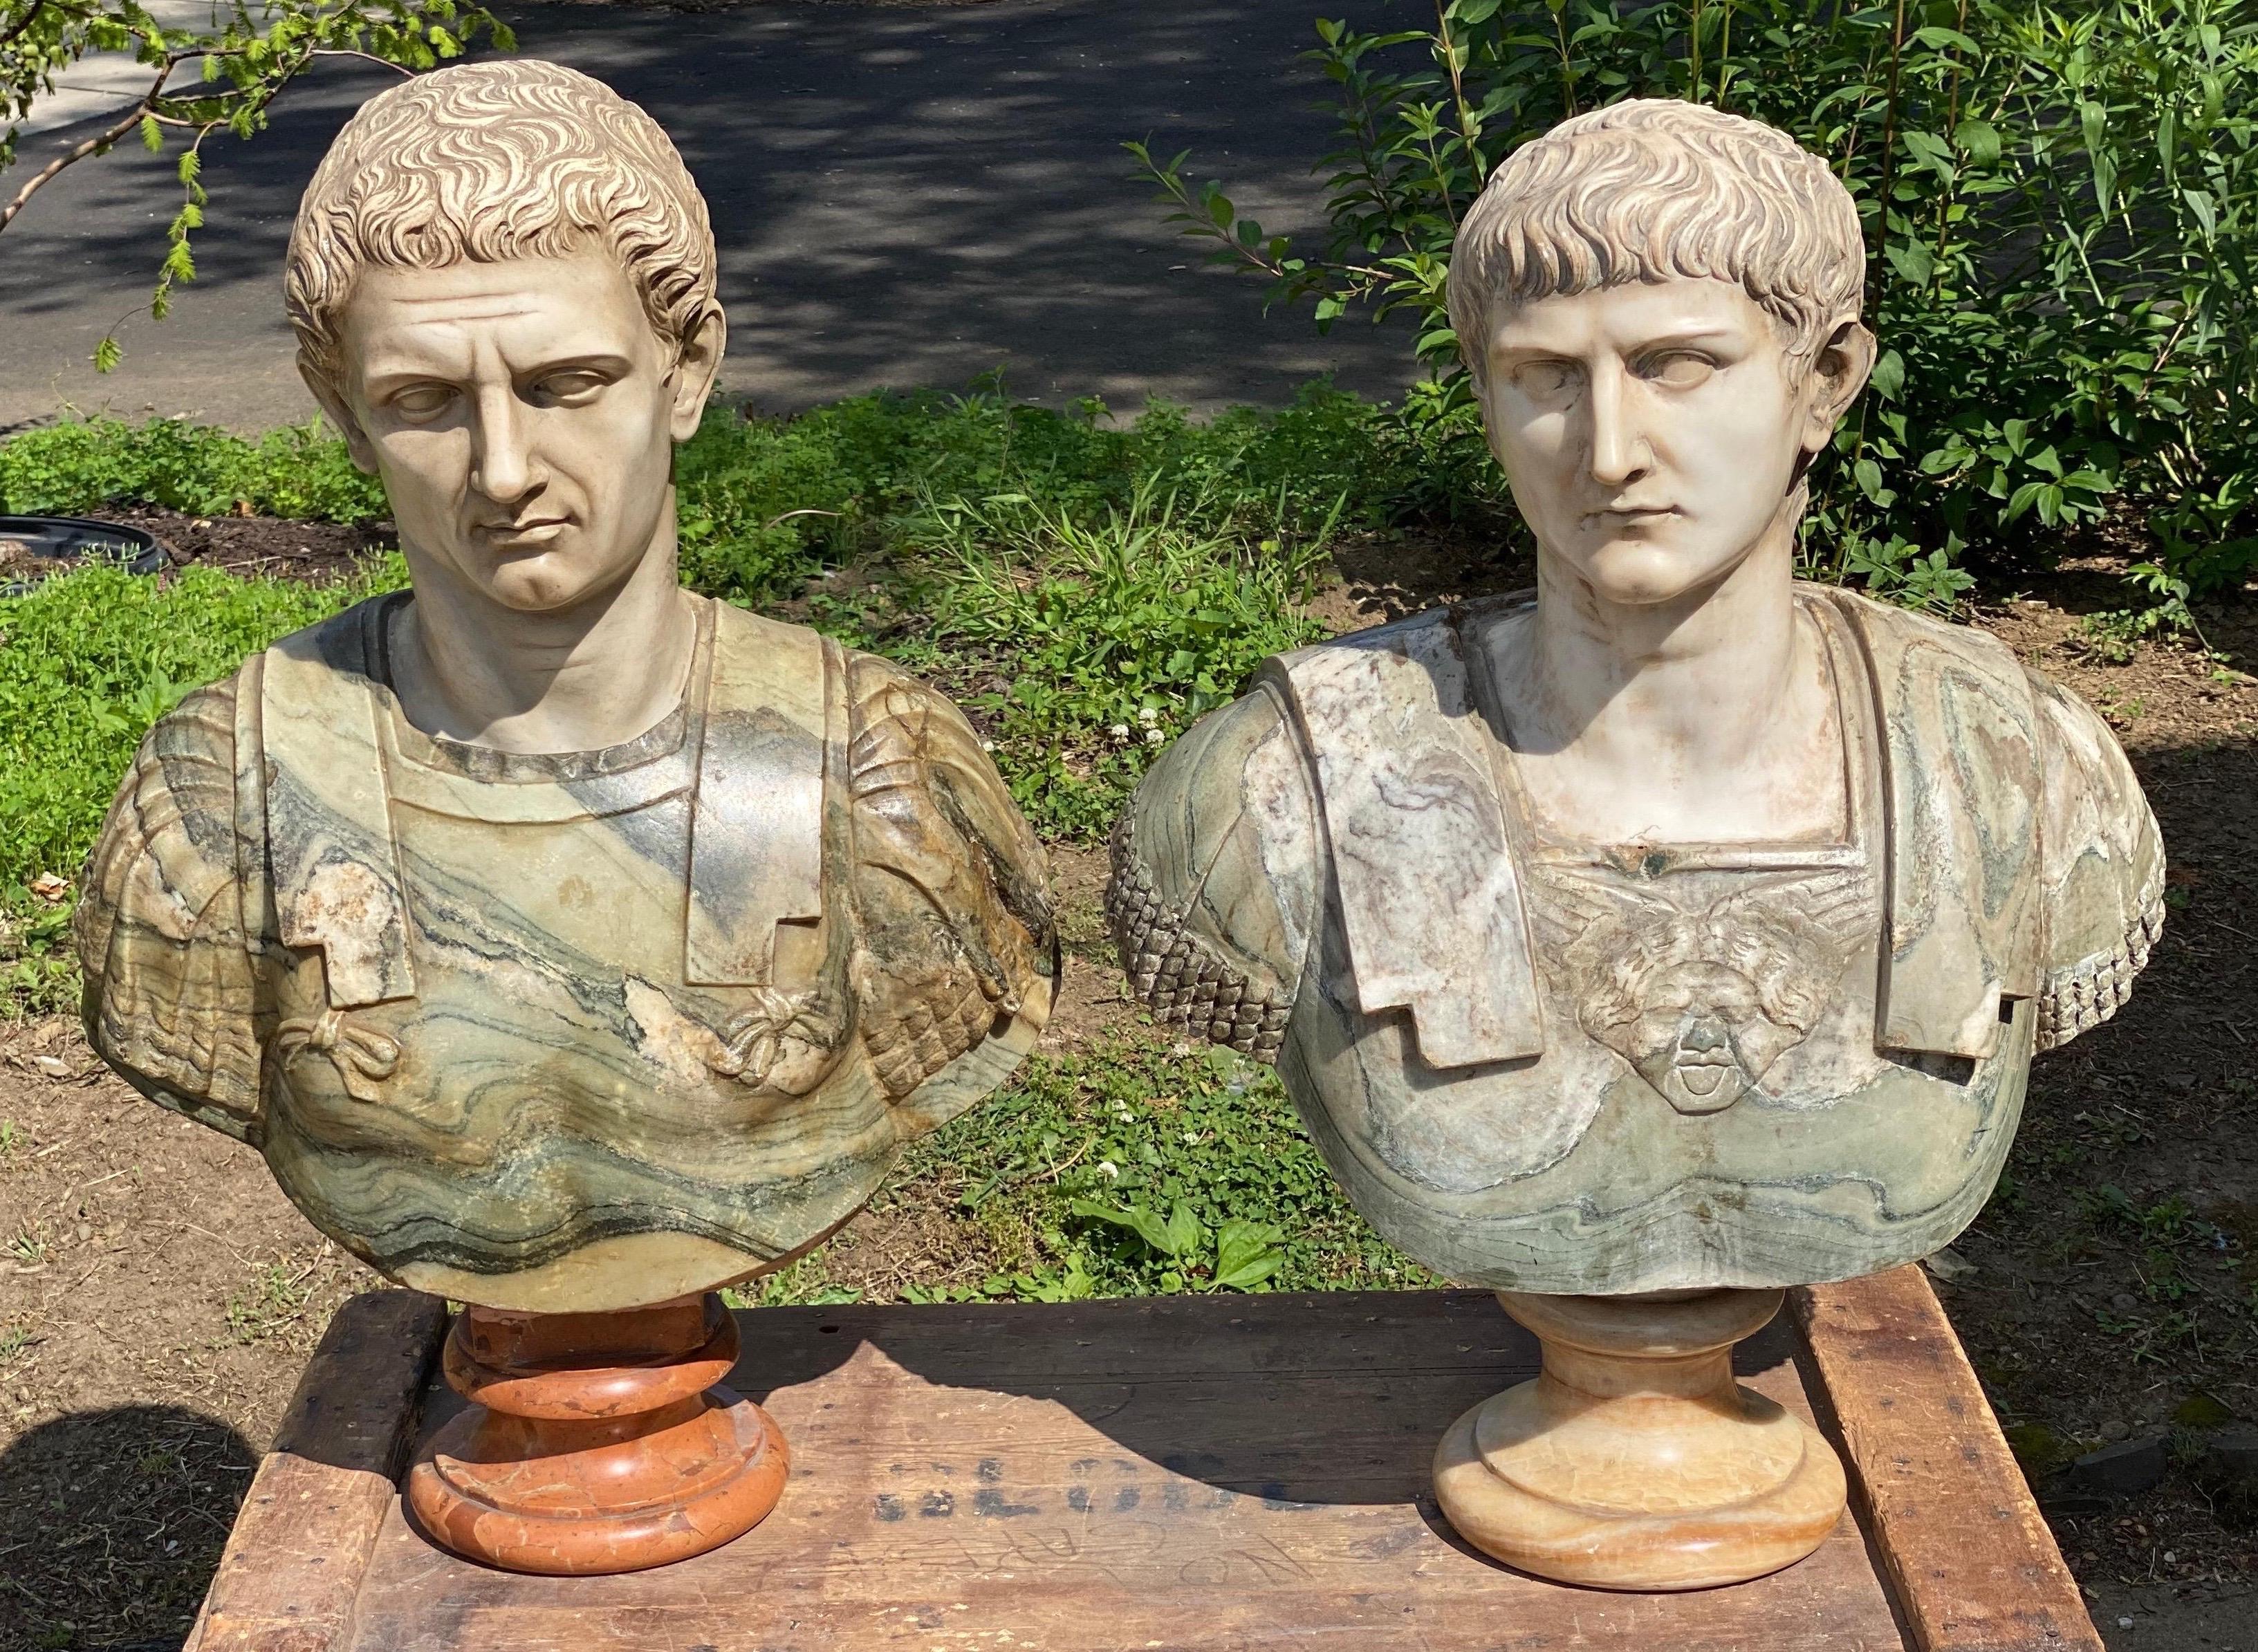 Unglaubliche handgeschnitzte italienische Marmorbüsten aus dem 19. Jahrhundert von Julius Caesar und Mark Anthony.

Die lebensechten Gesichter sind tadellos in weißen Marmor gemeißelt. Diese wirklich beeindruckenden Büsten wurden eindeutig von einem